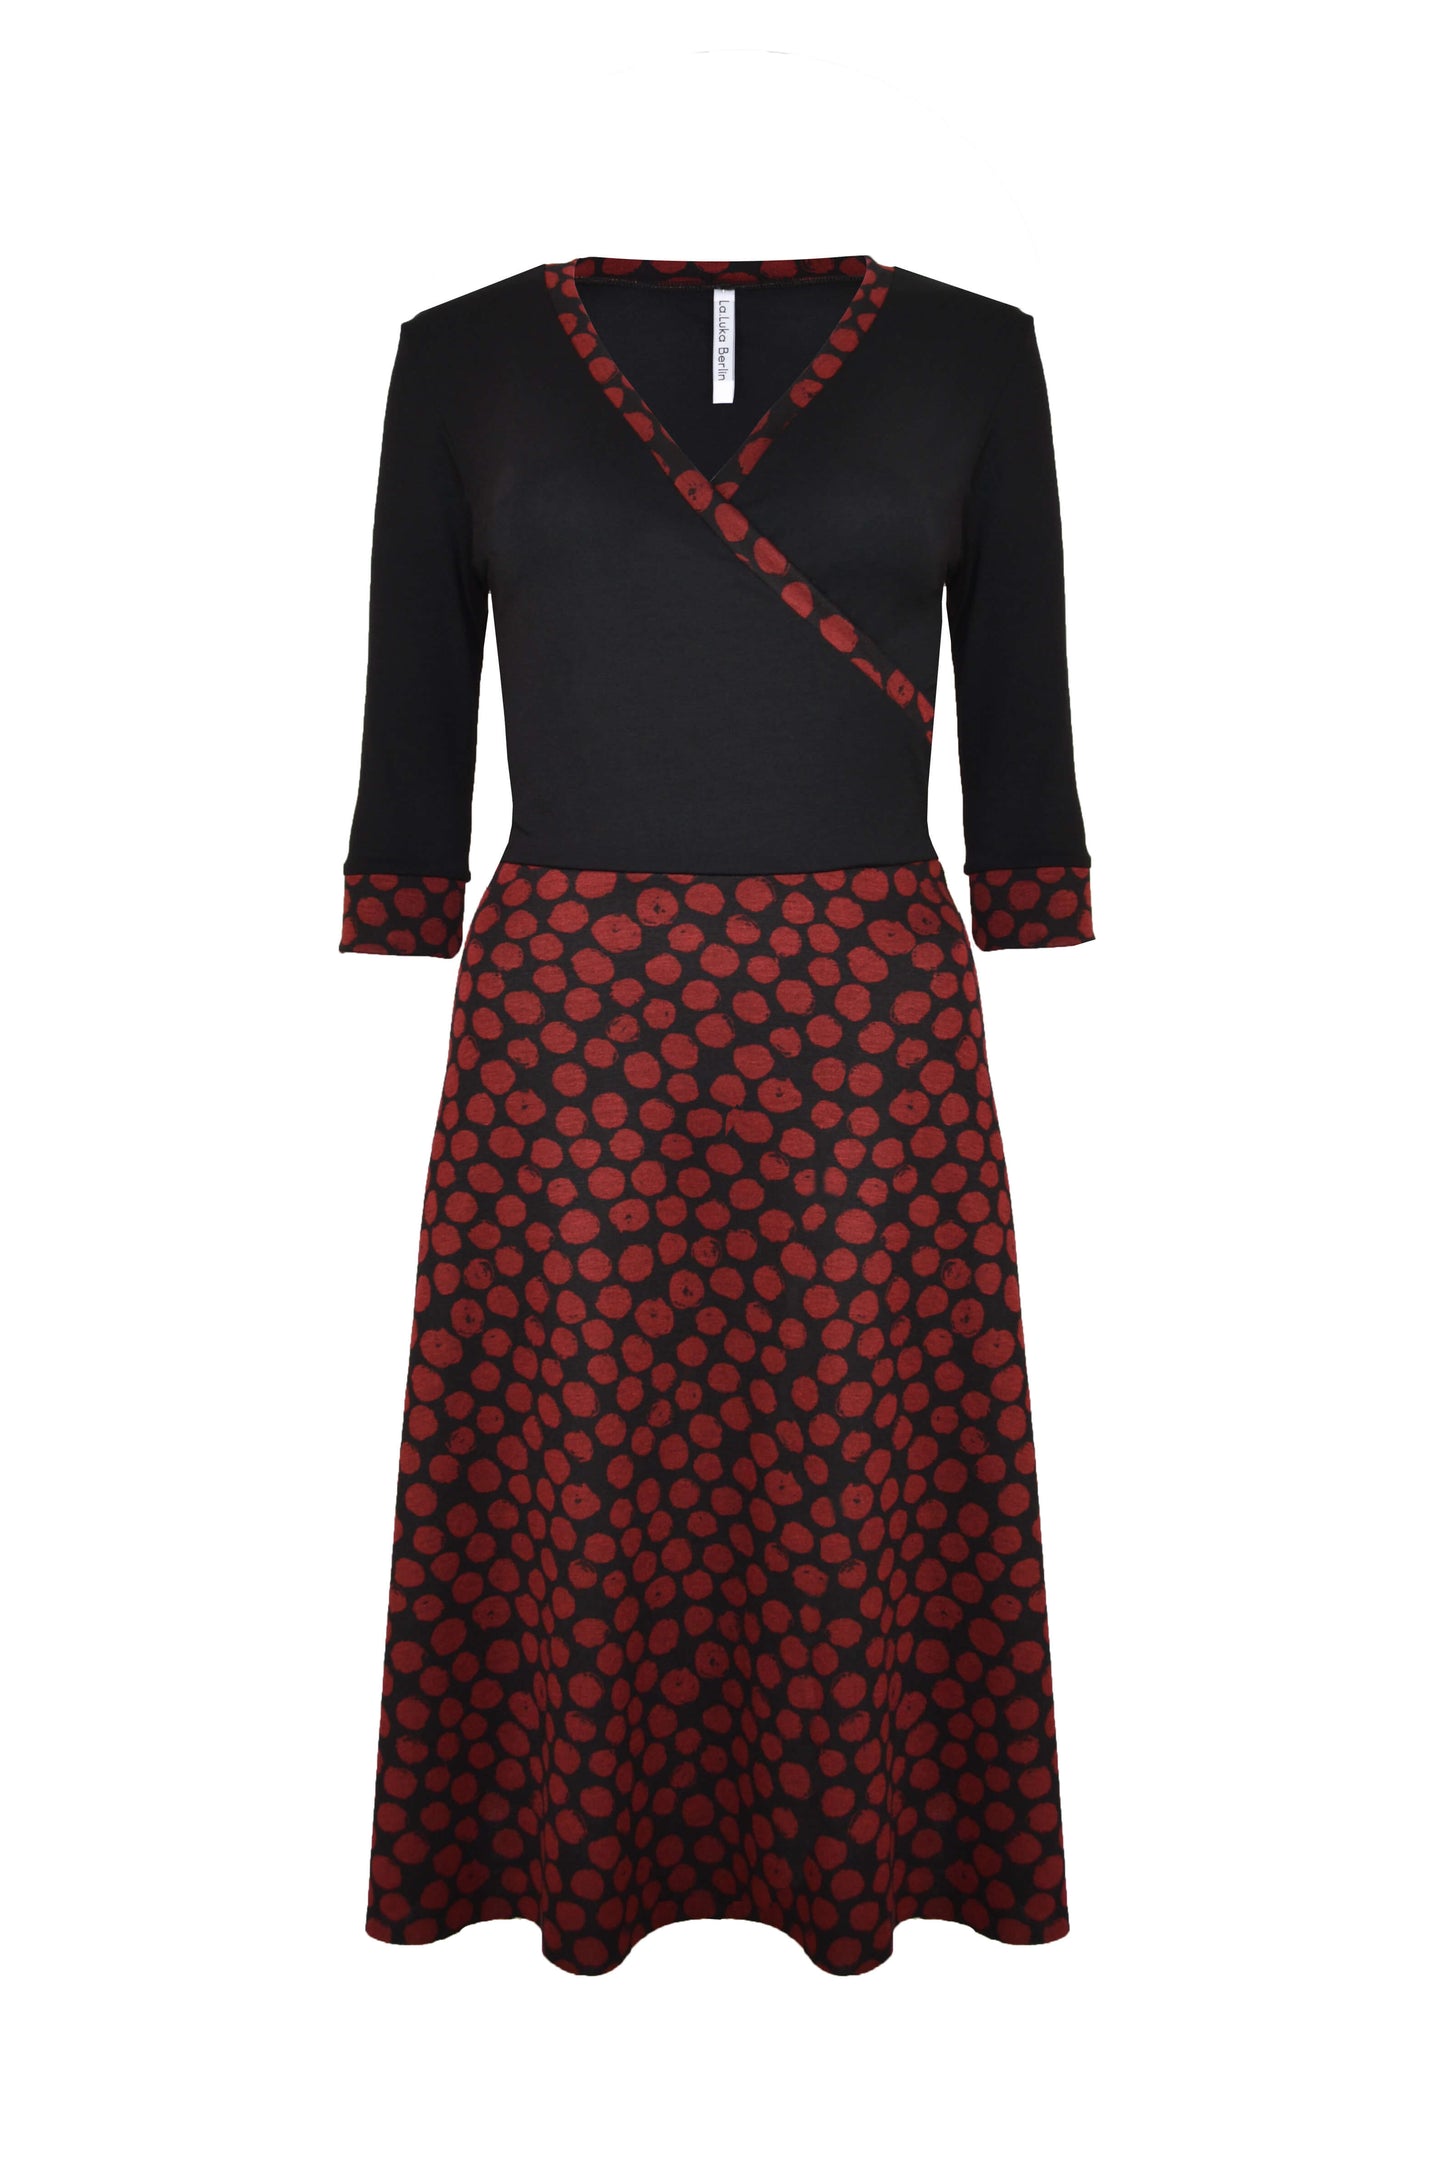 Elegantes Kleid aus Jersey in schwarz mit roten Punkten und V-Ausschnitt von LA.LUKA Berlin in der Vorderansicht.